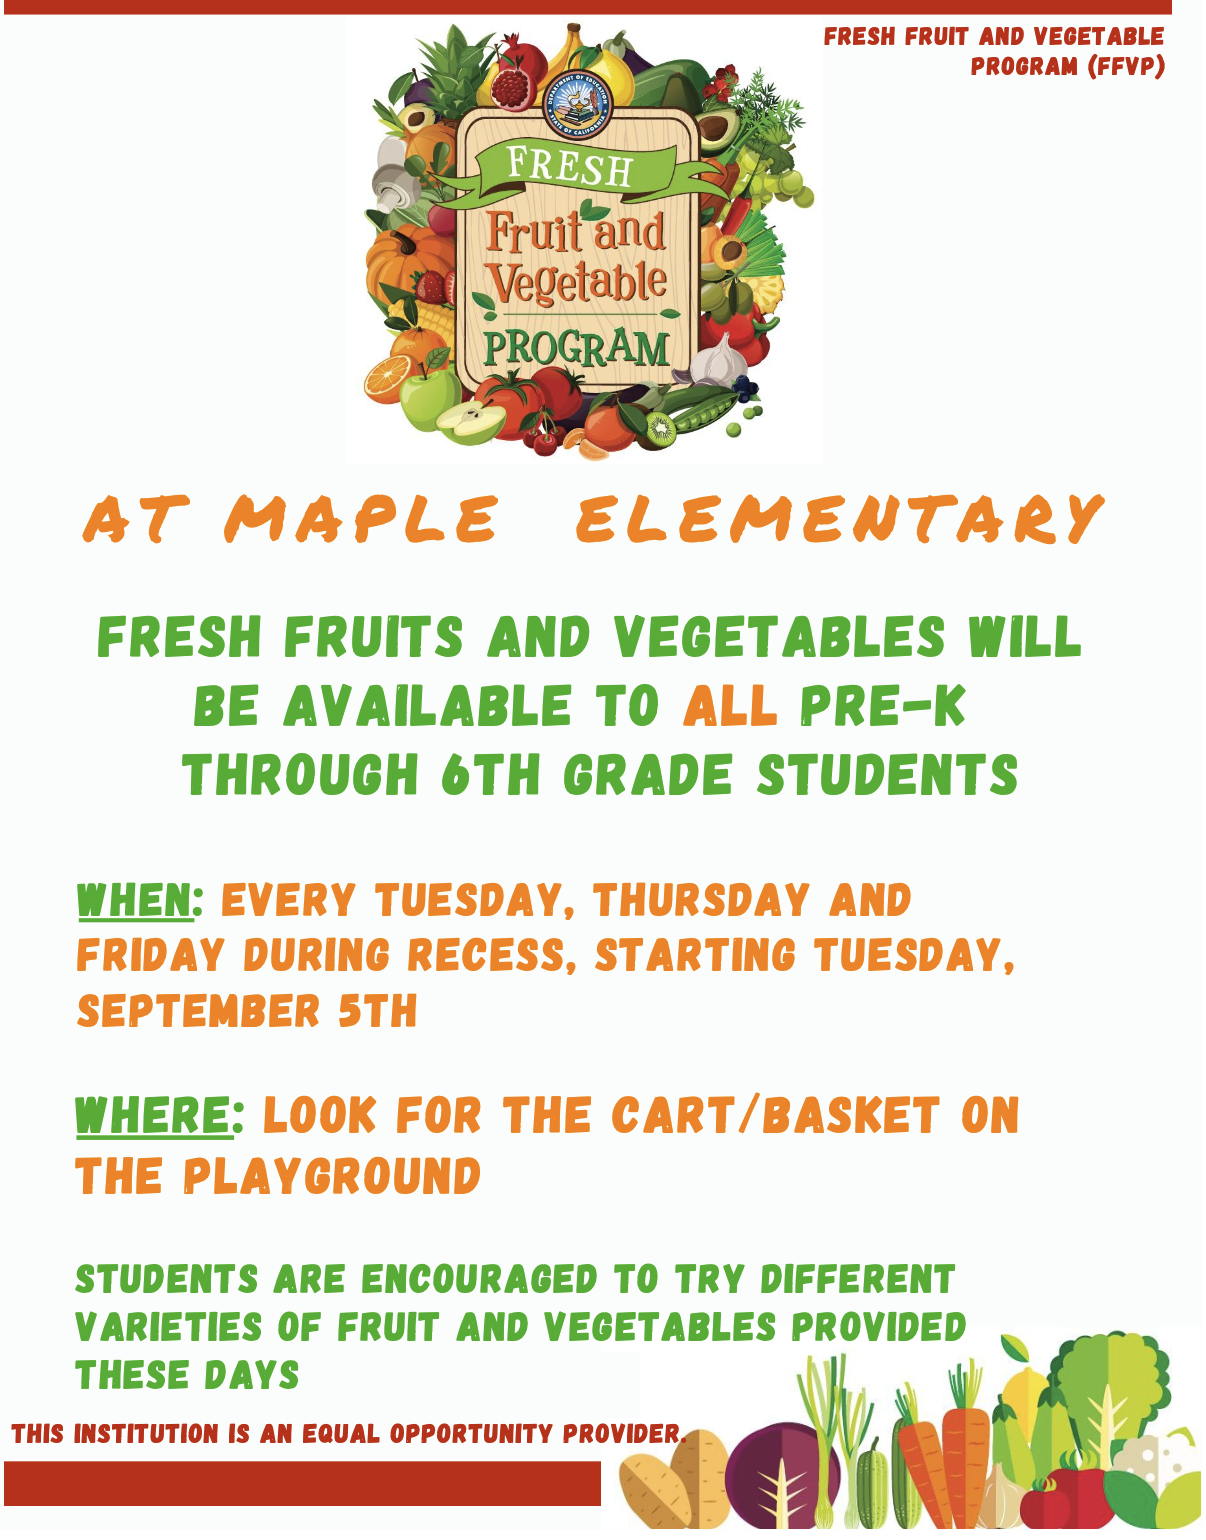  Fresh Fruit and Vegetable Program Flyer